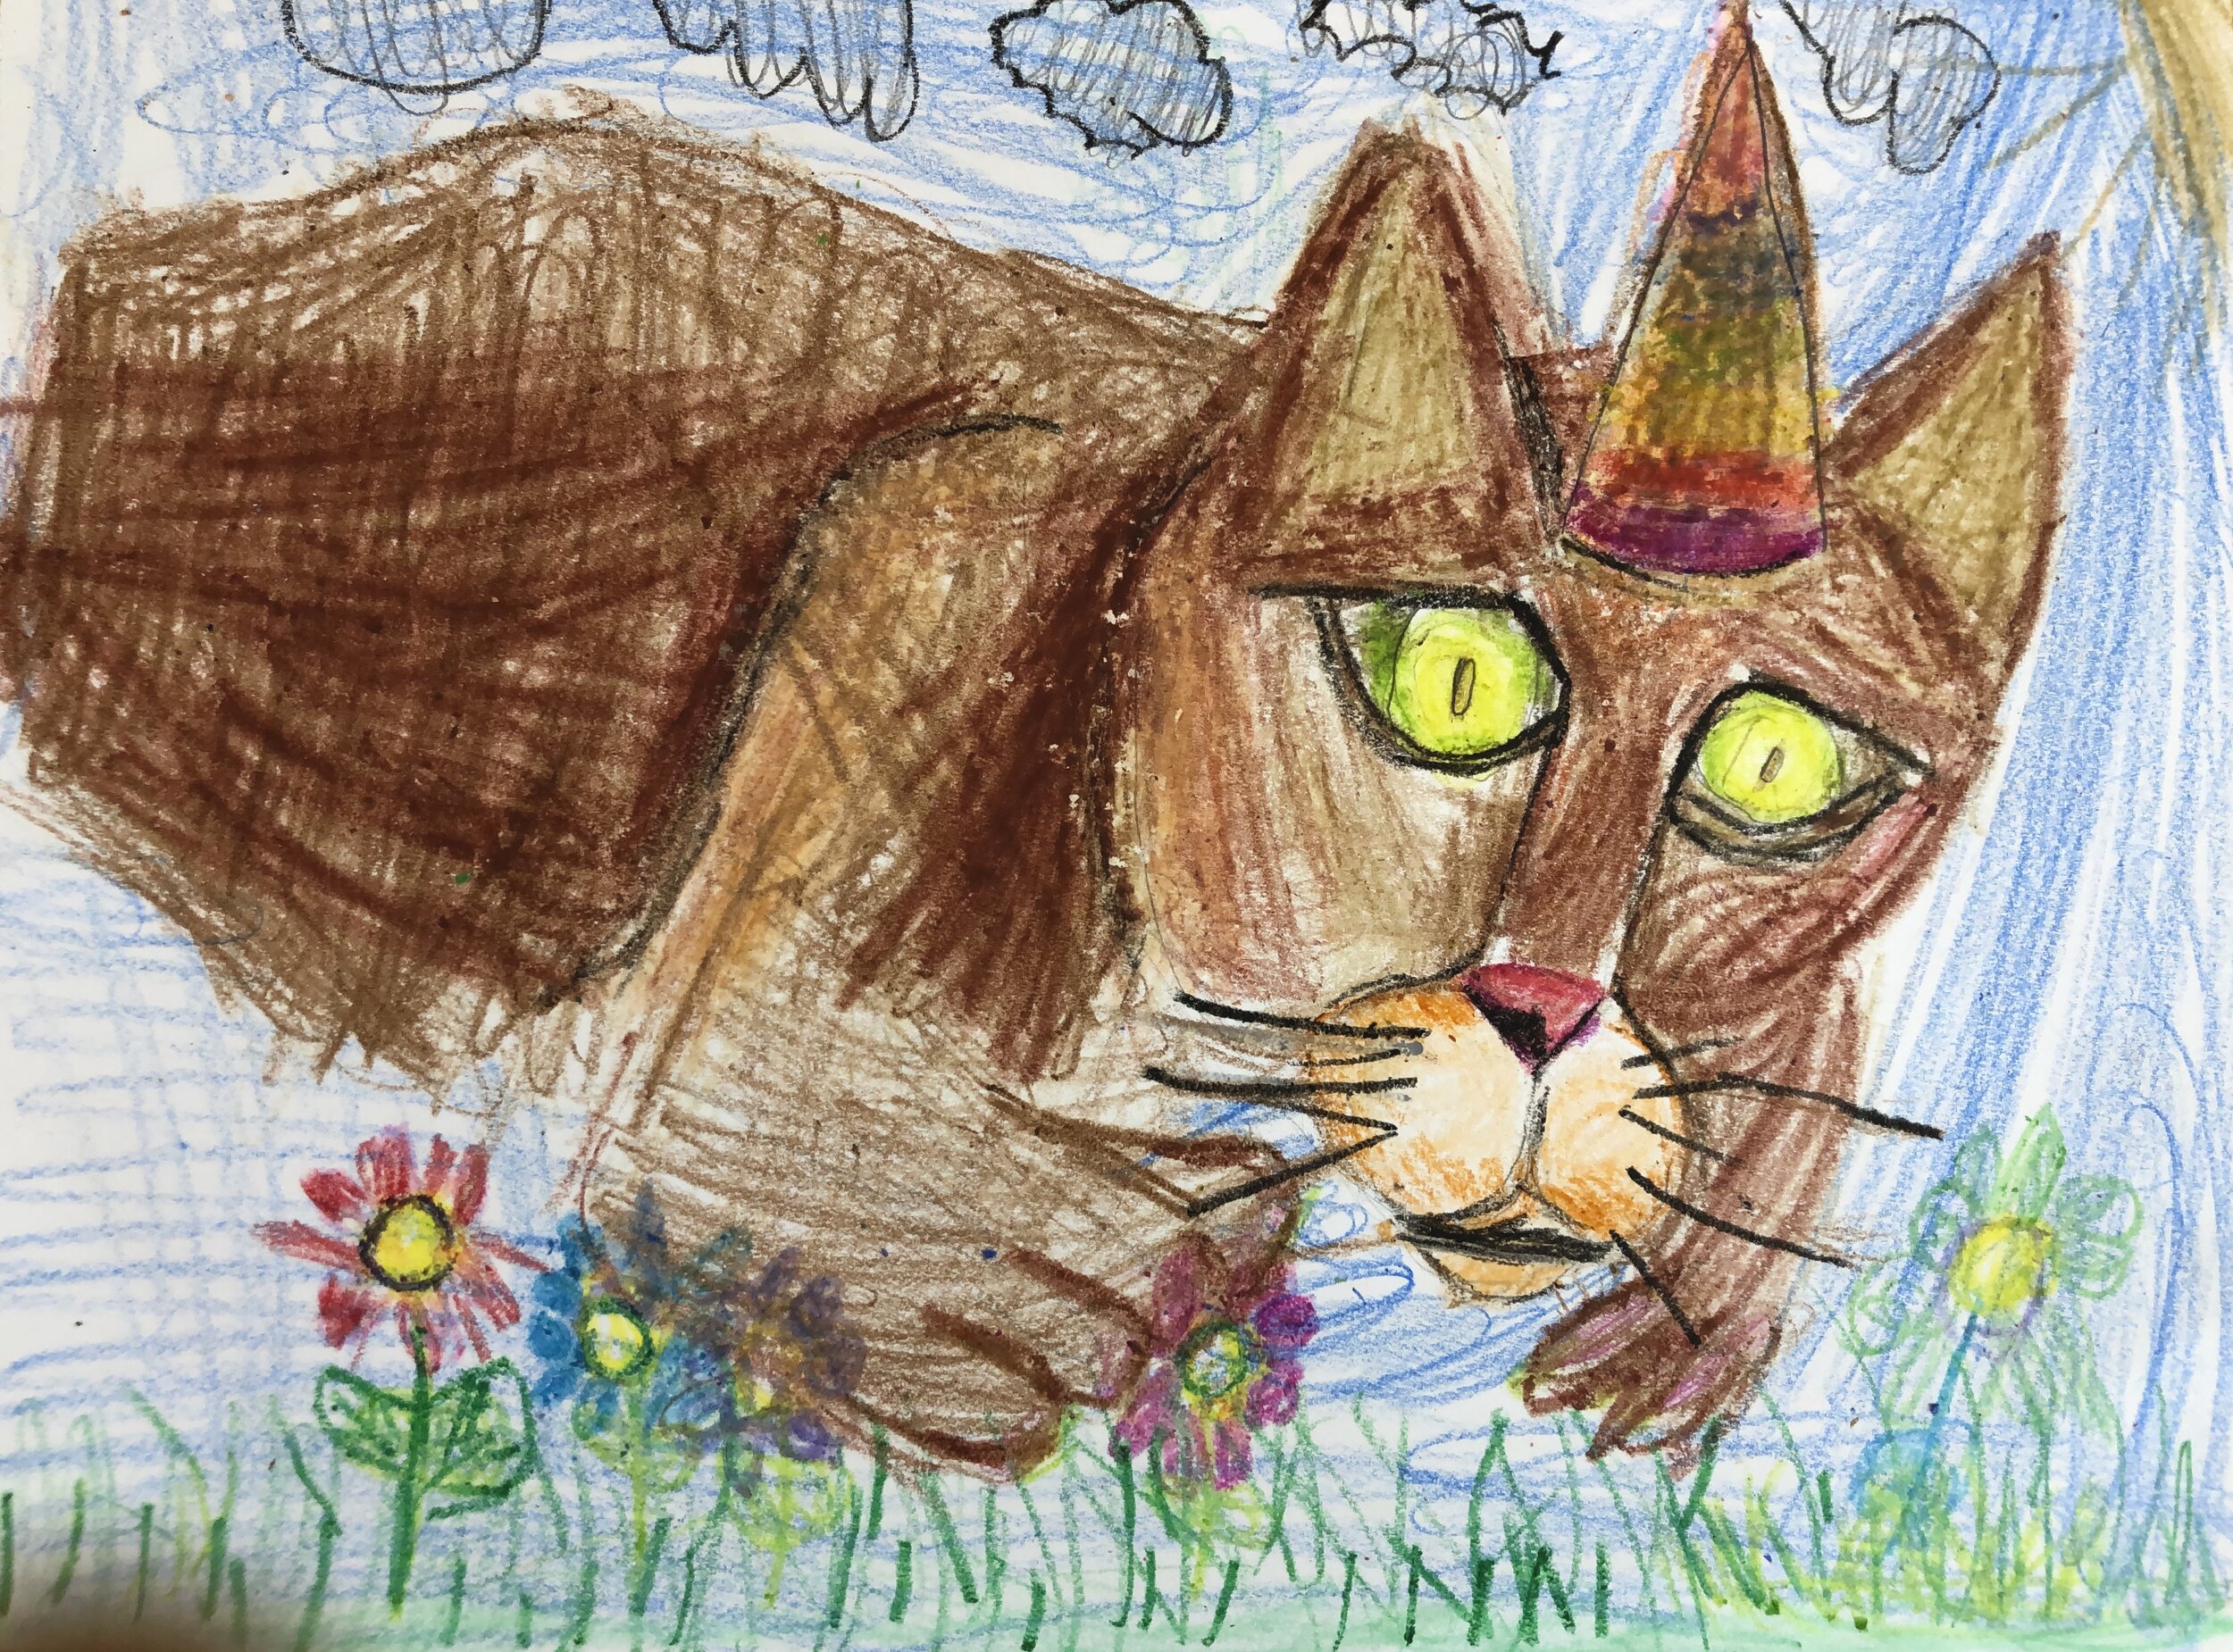 Firestar text template - Warrior cats - Digital Art, Childrens Art